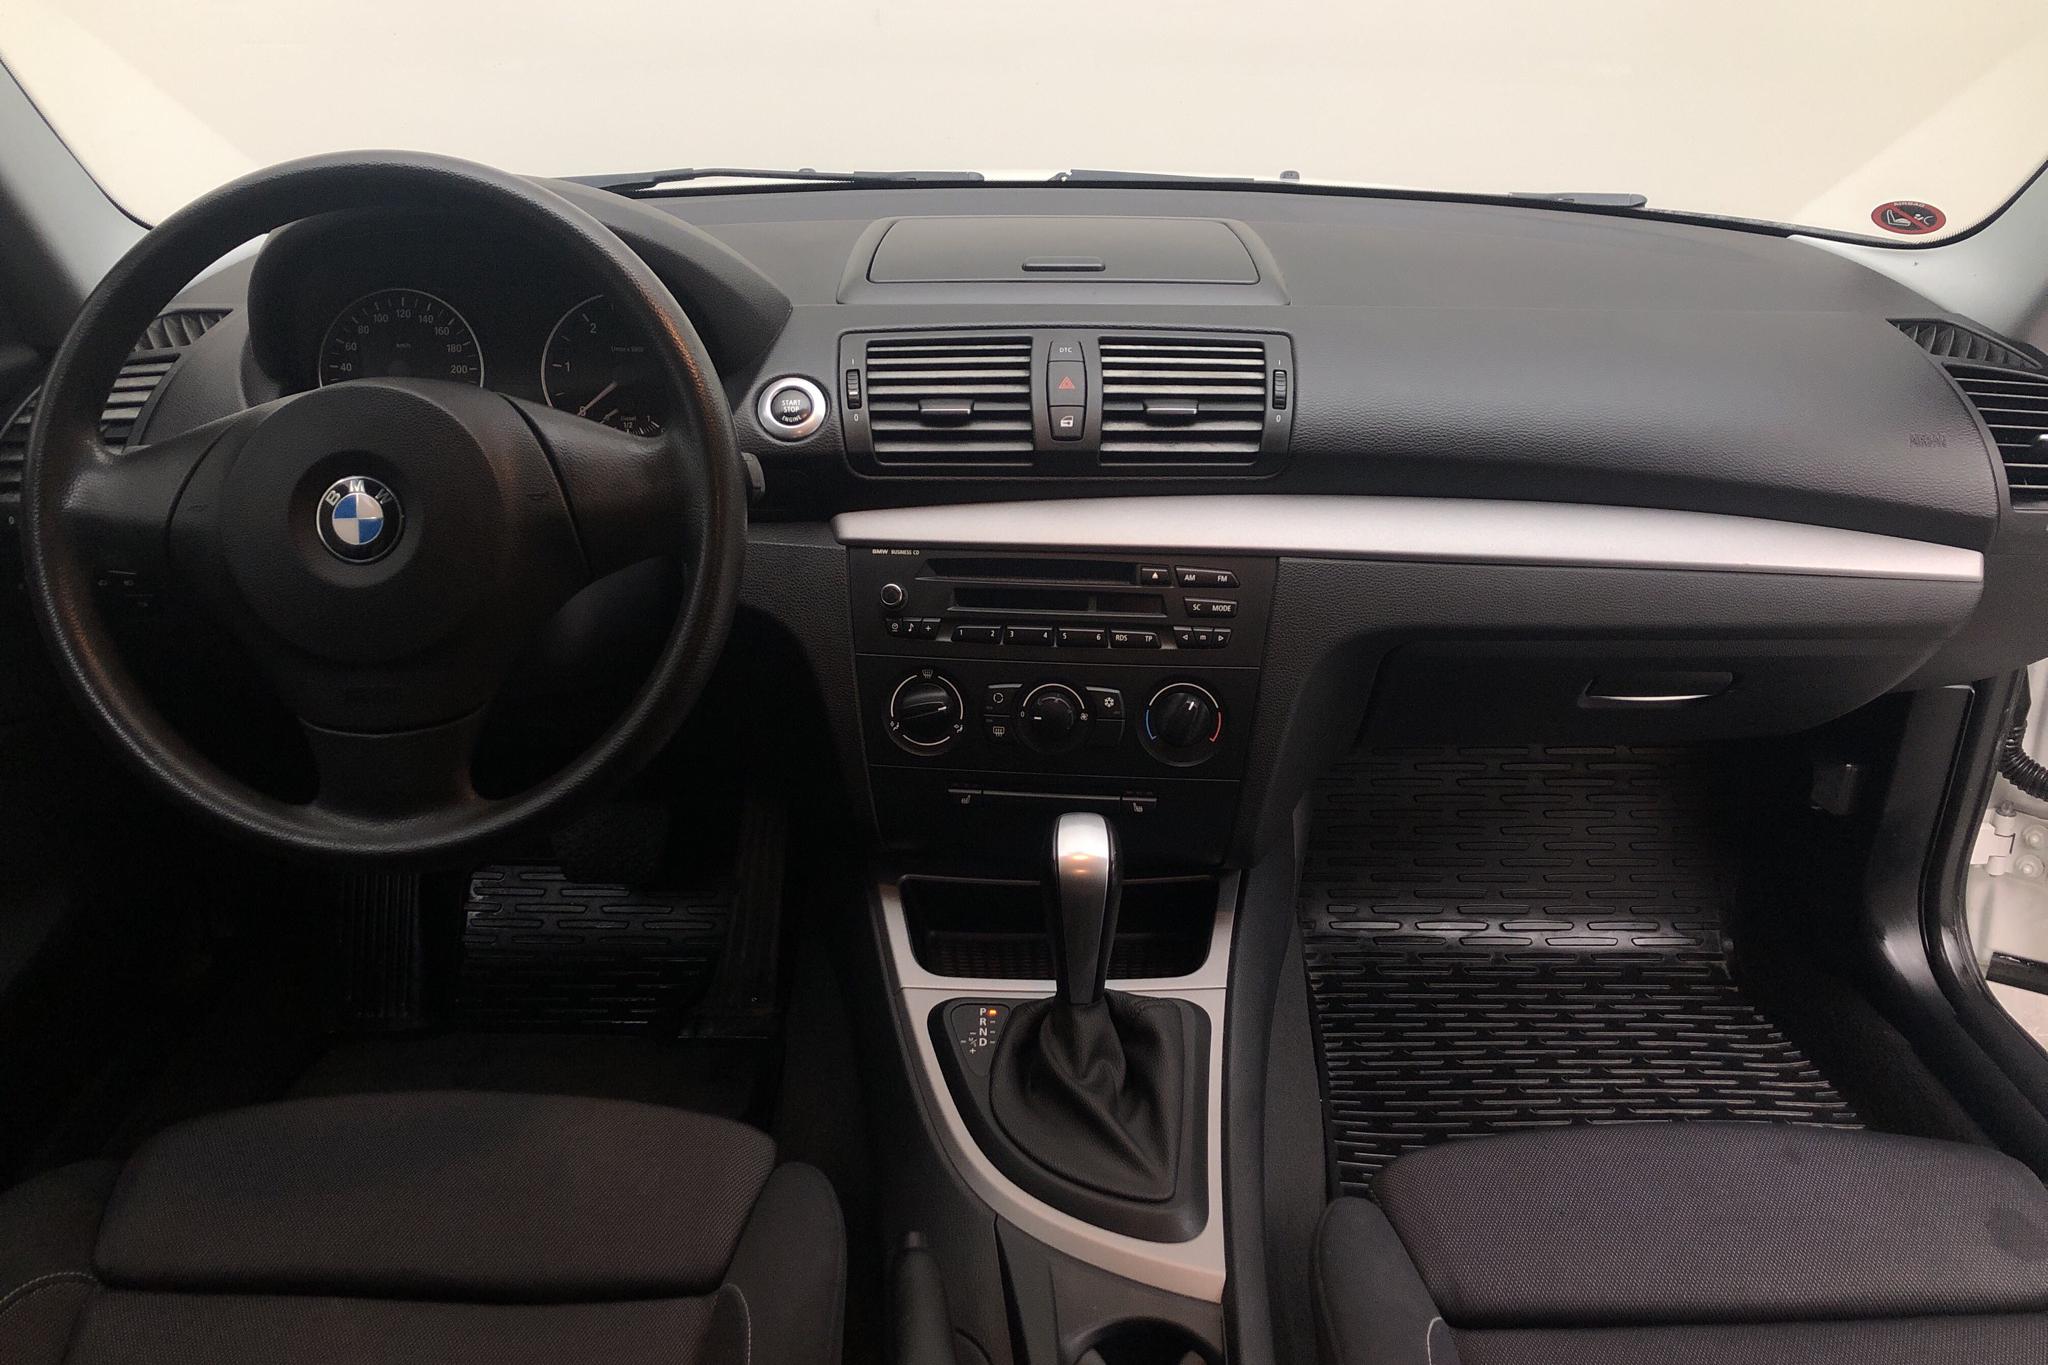 BMW 118d 3dr, E81 (143hk) - 100 950 km - Automatic - white - 2010